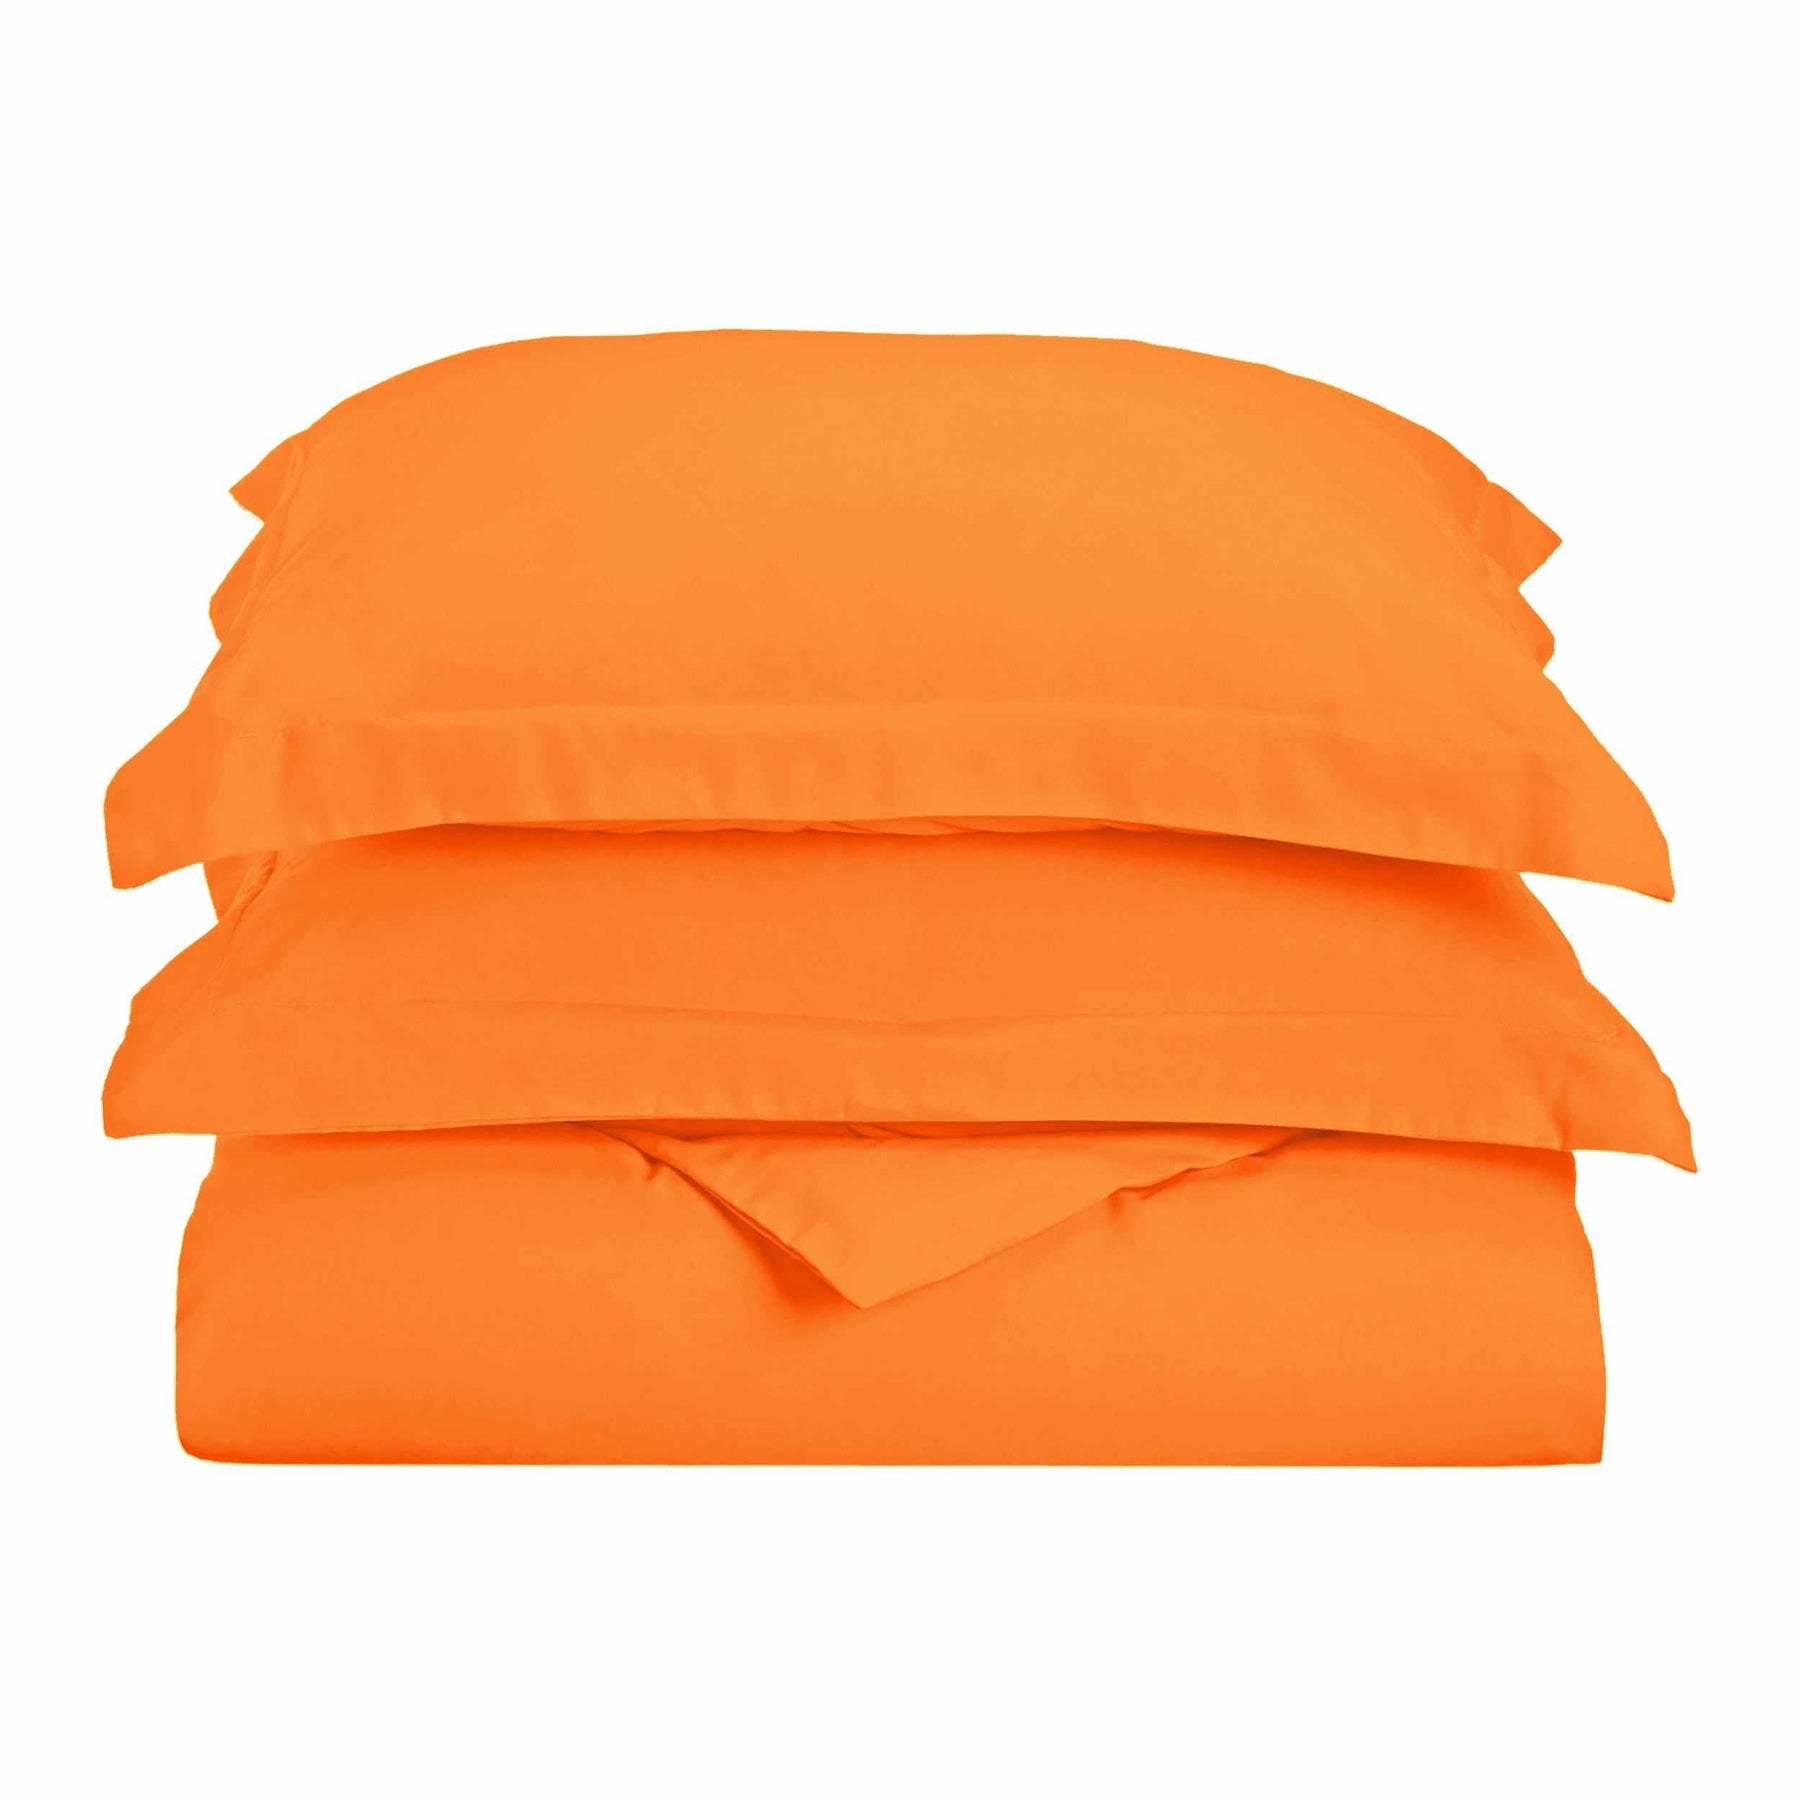 Superior Solid Microfiber Wrinkle Resistant Duvet Cover Set - Orange